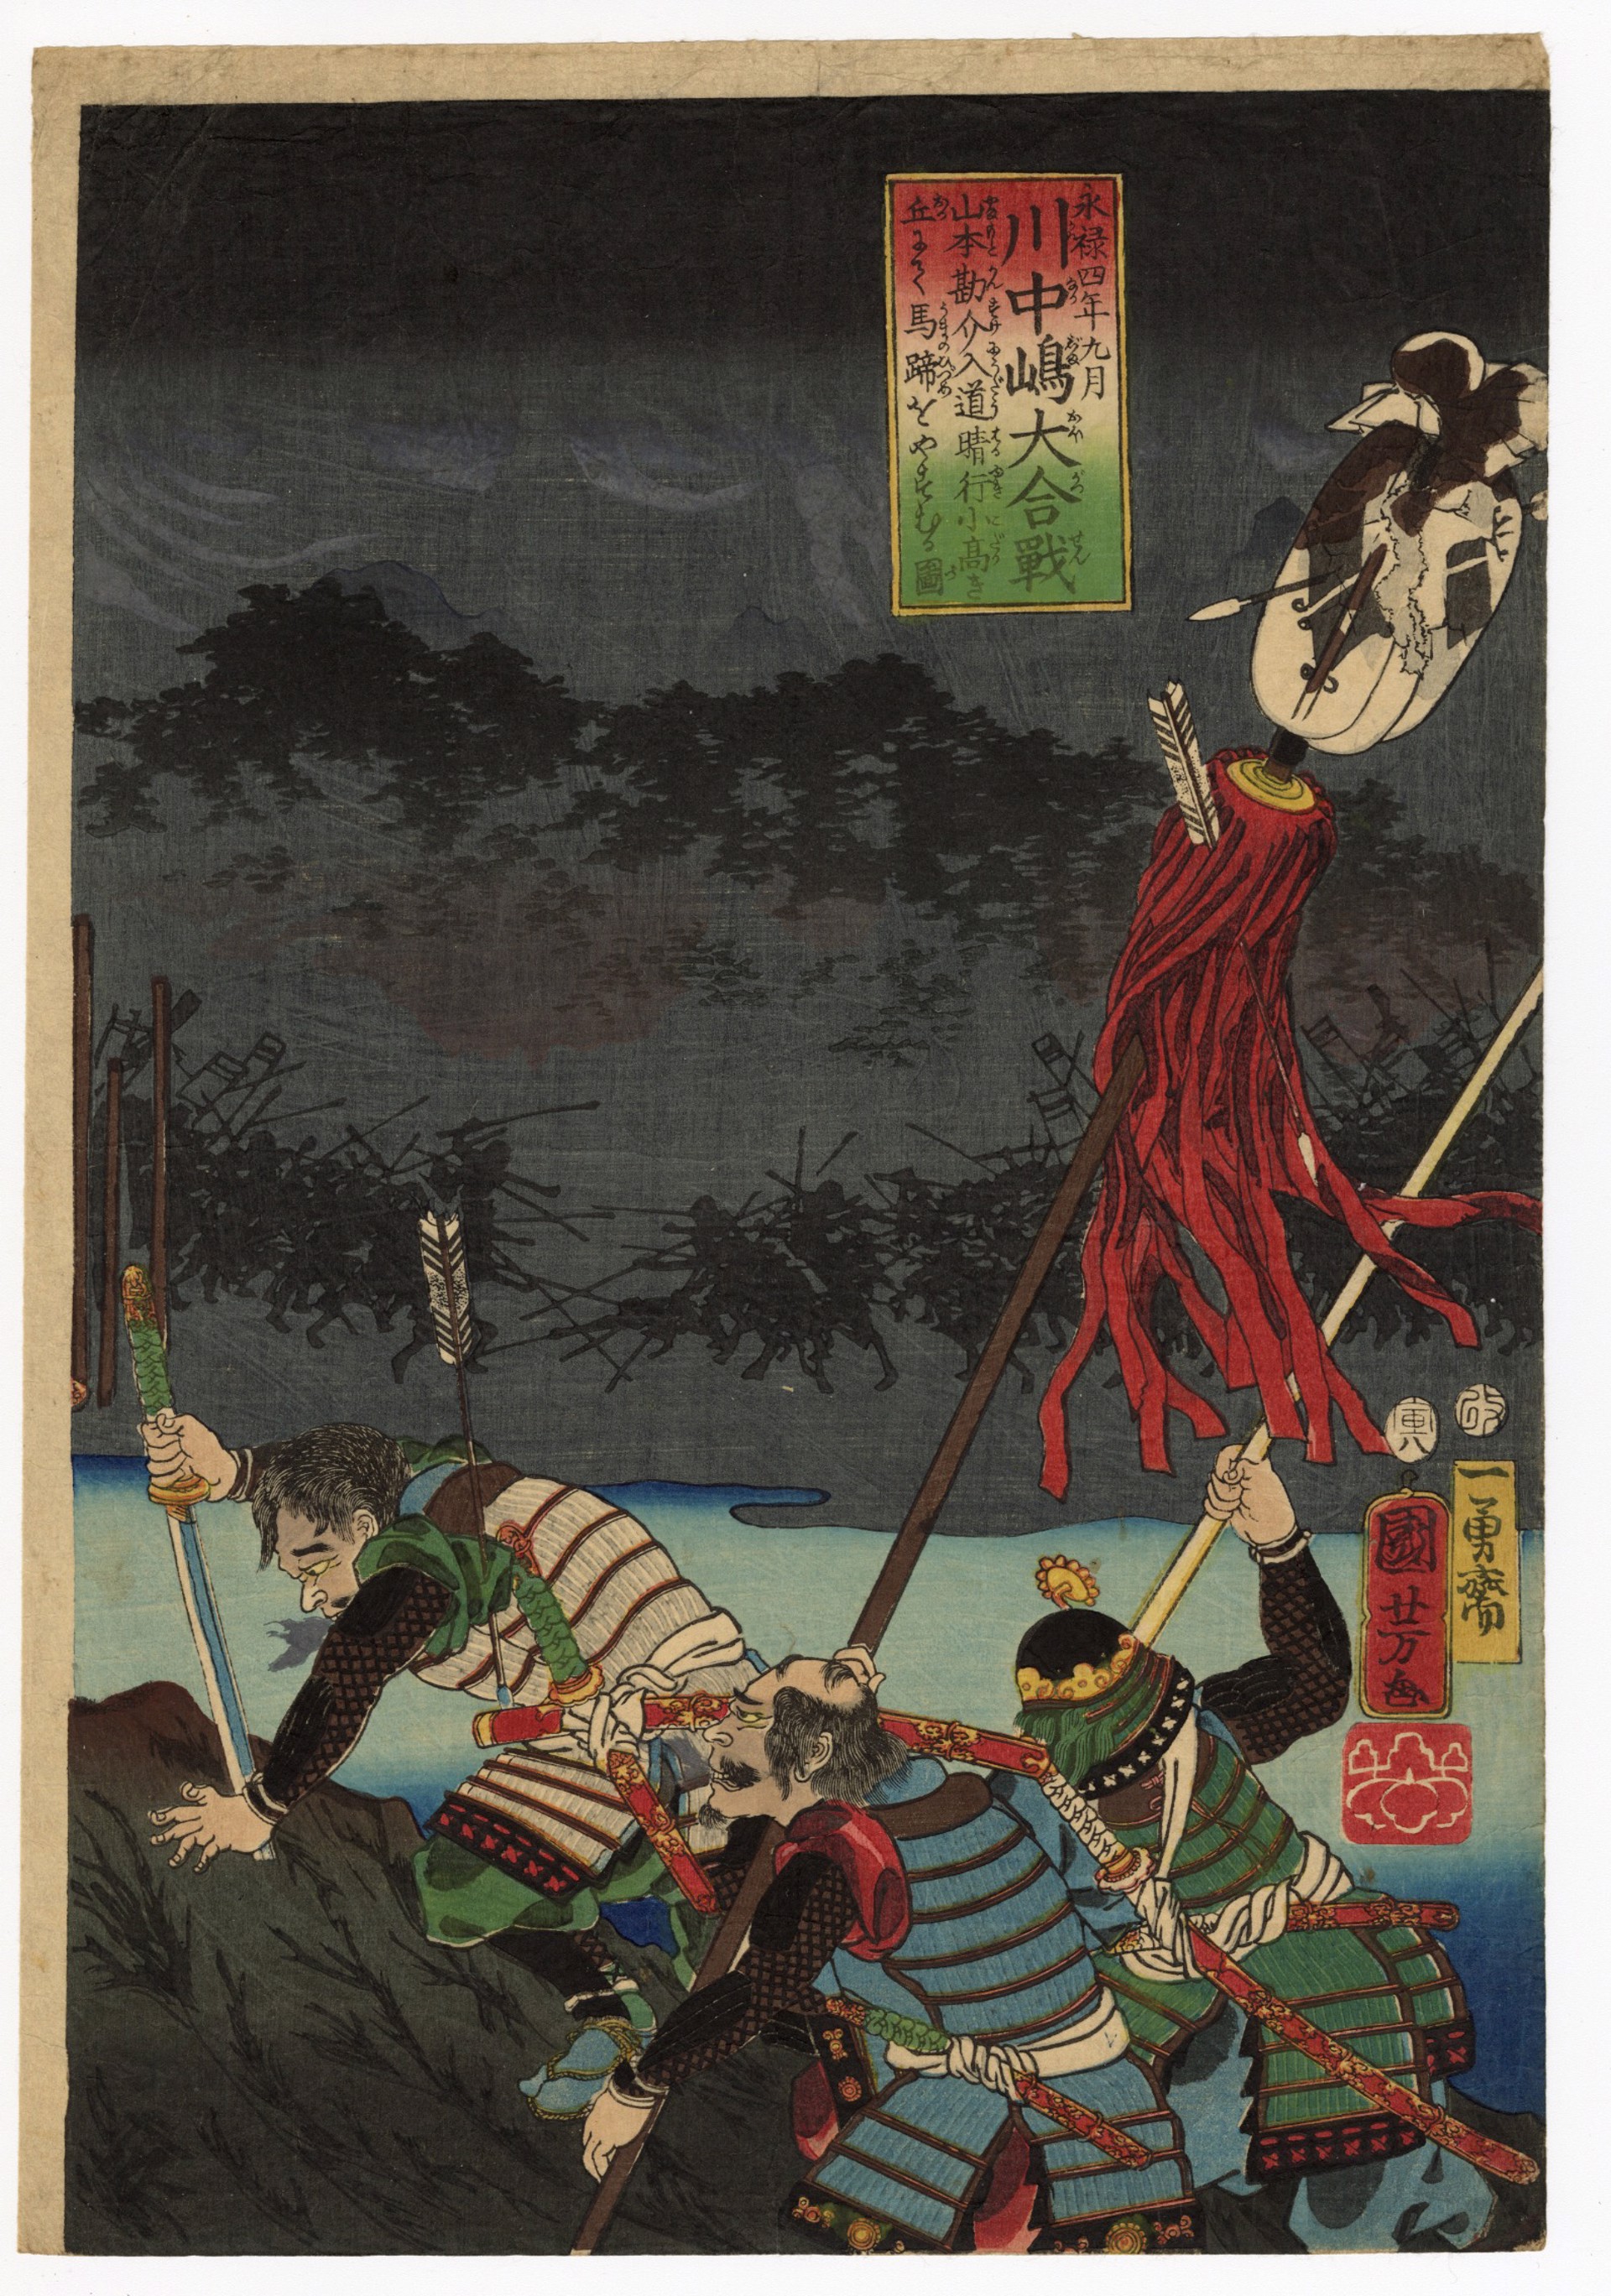 4th Year, 9th Monthof the Eiroku Era, Battle of Kawanakajima by Kuniyoshi